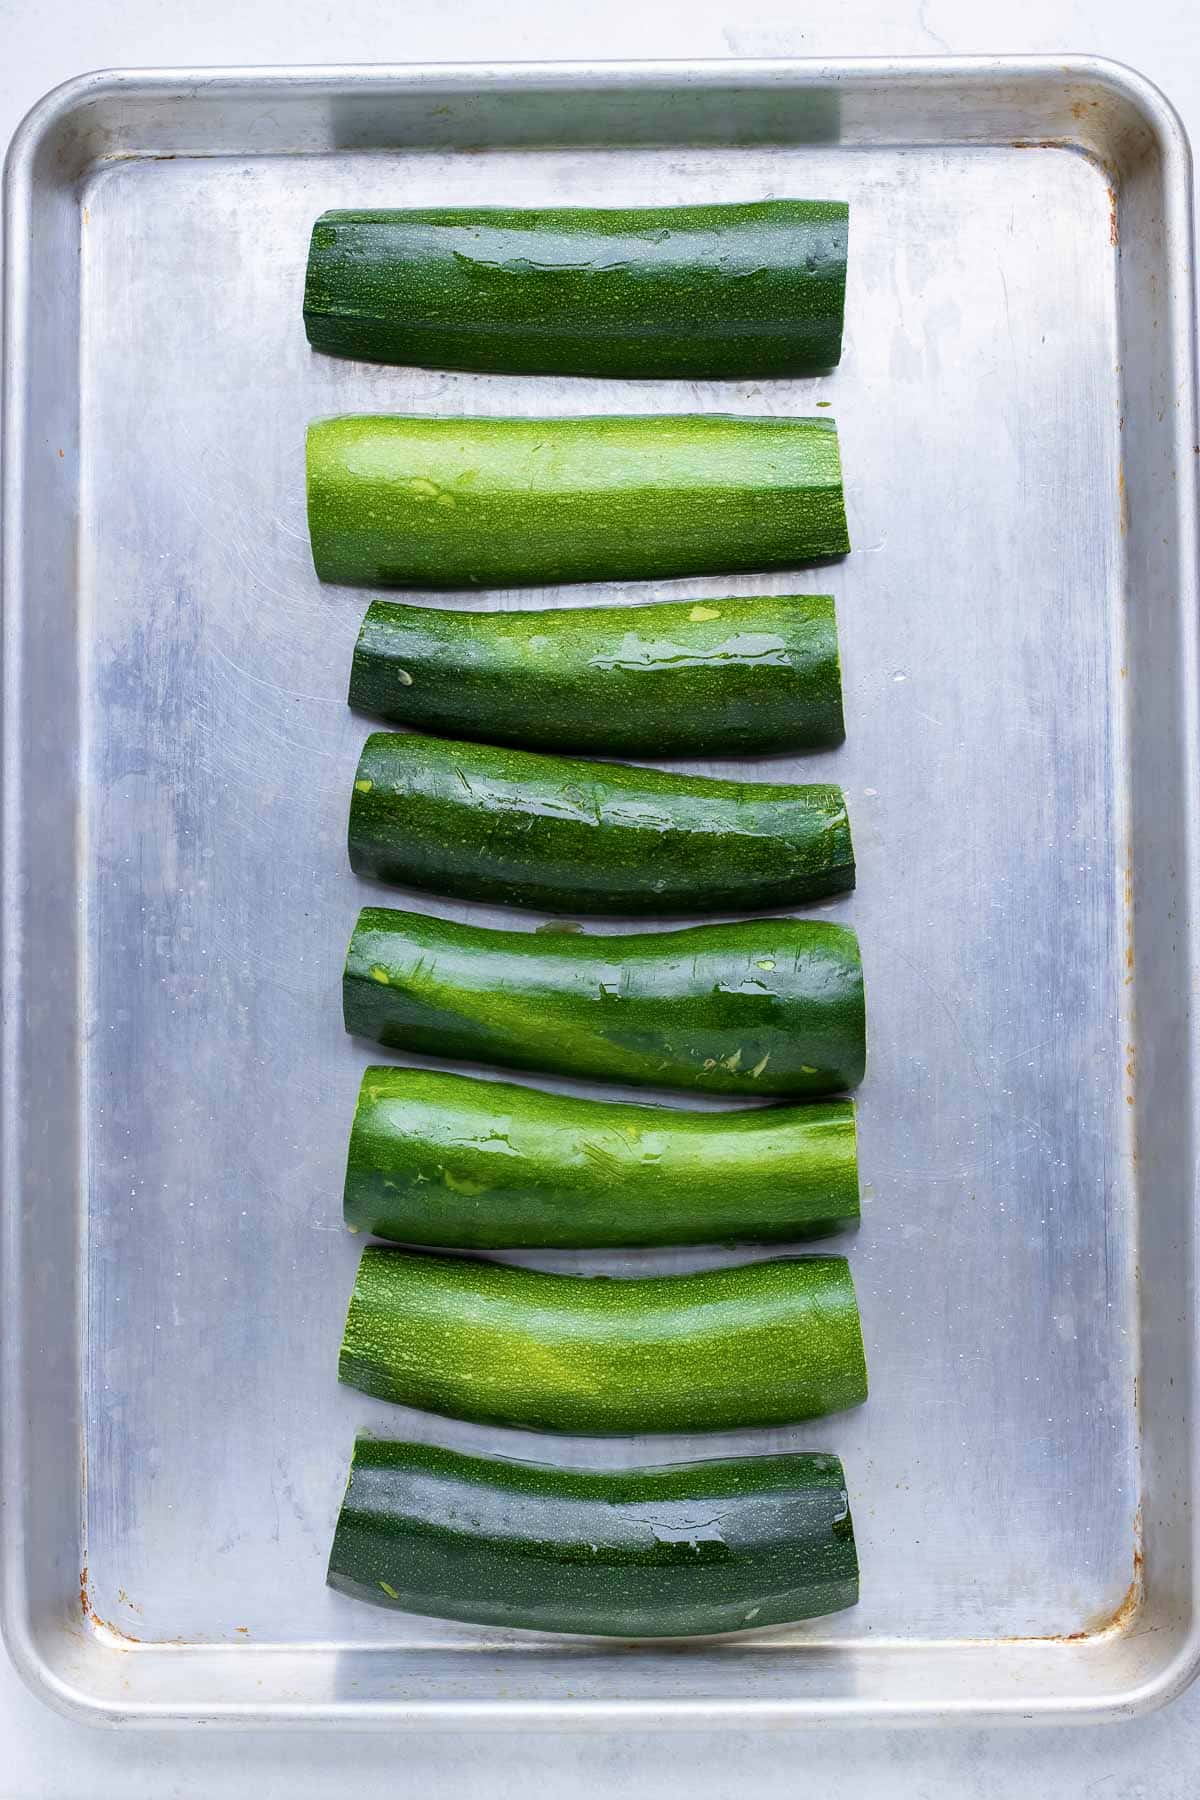 Prepared zucchini are prebaked before stuffing.